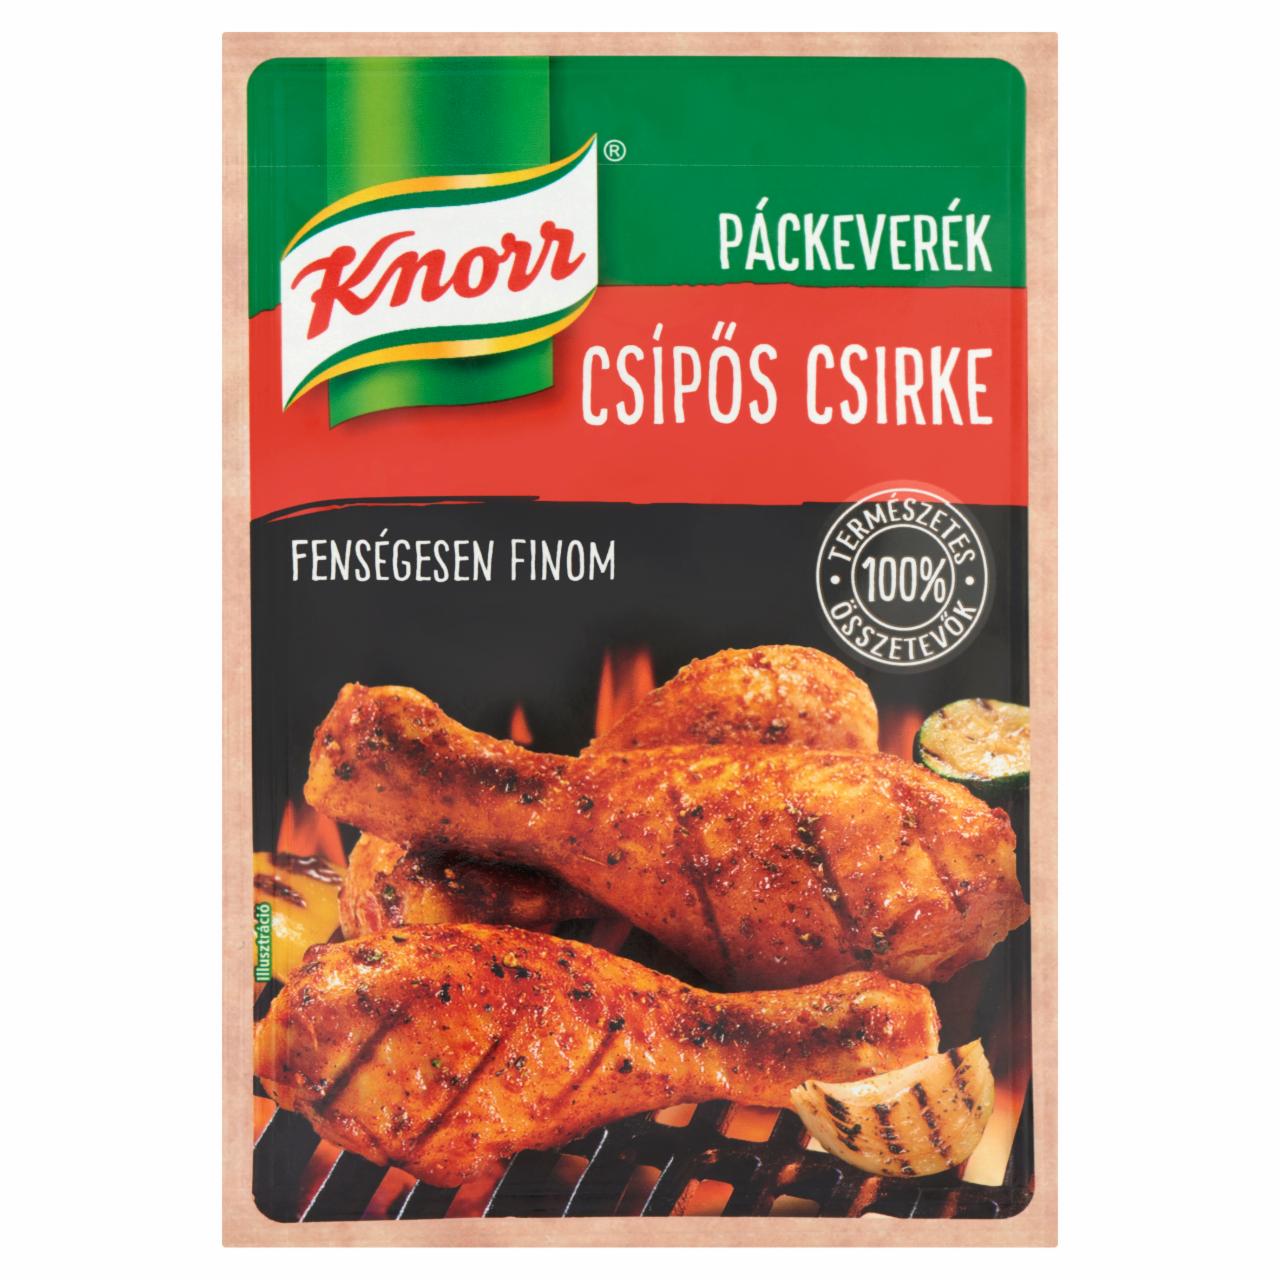 Képek - Knorr csípős csirke páckeverék 35 g